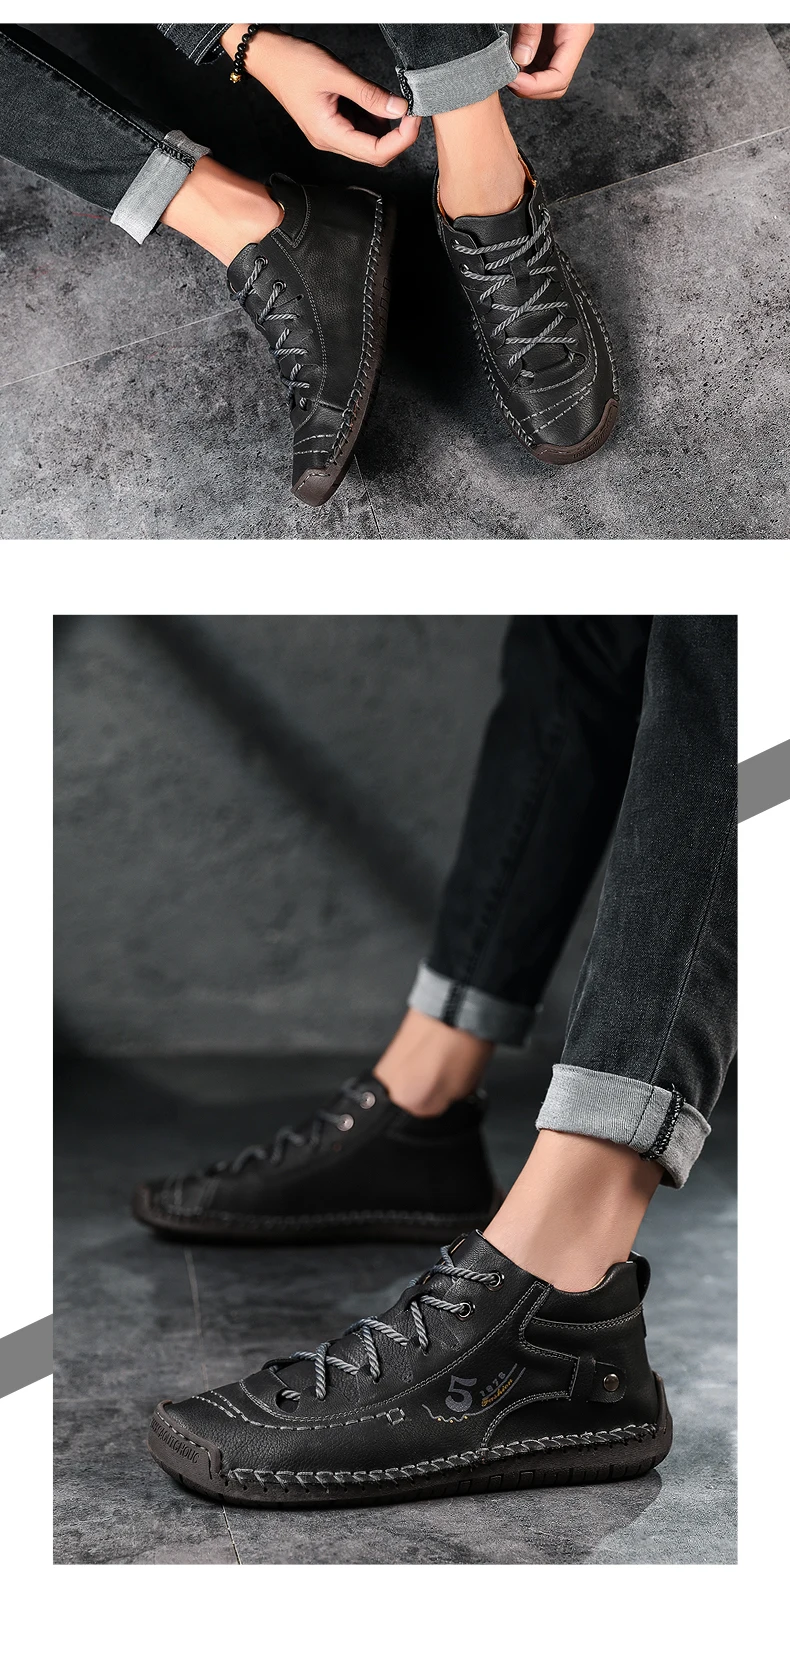 Mazefeng/ г. Новая удобная мужская повседневная обувь качественная кожаная обувь мужские мокасины на плоской подошве Большие размеры 38-48